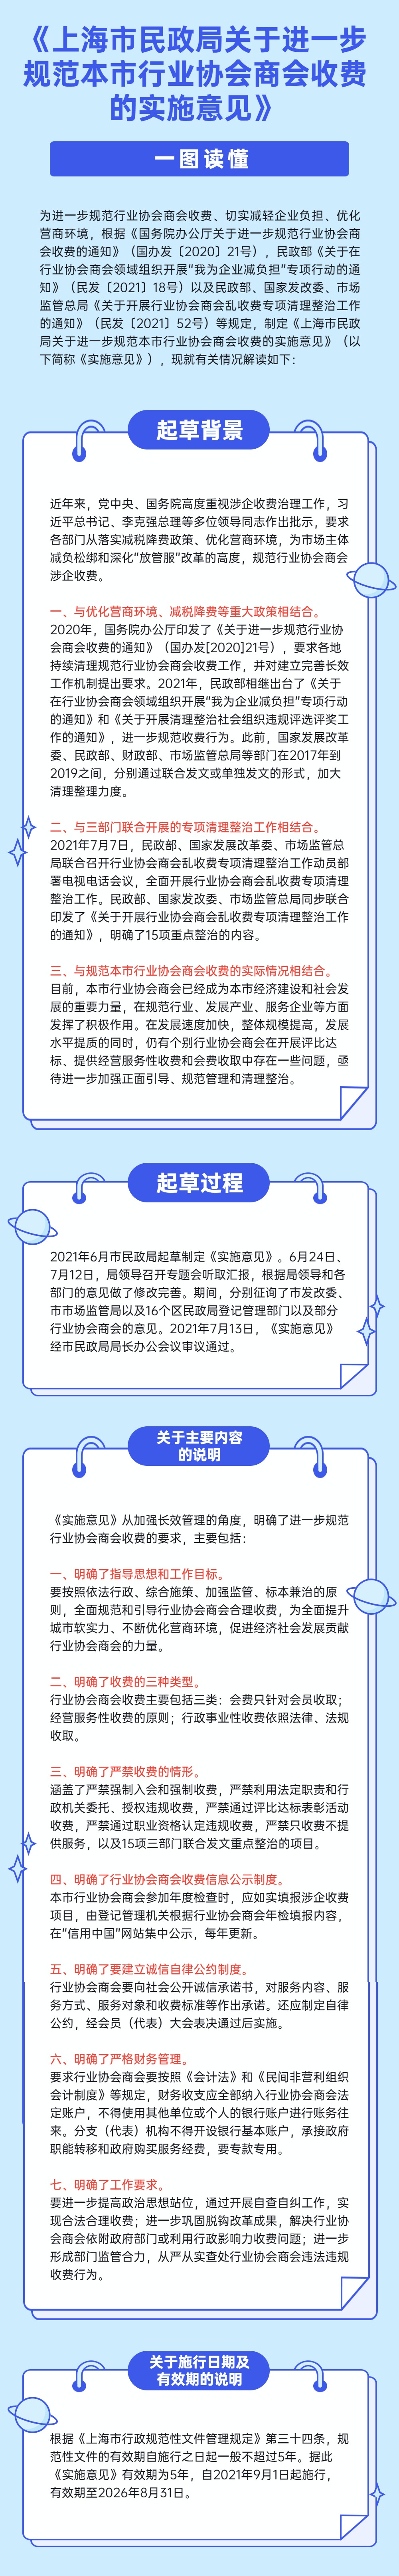 一图读懂《上海市民政局关于进一步规范本市行业协会商会收费的实施意见》.jpg